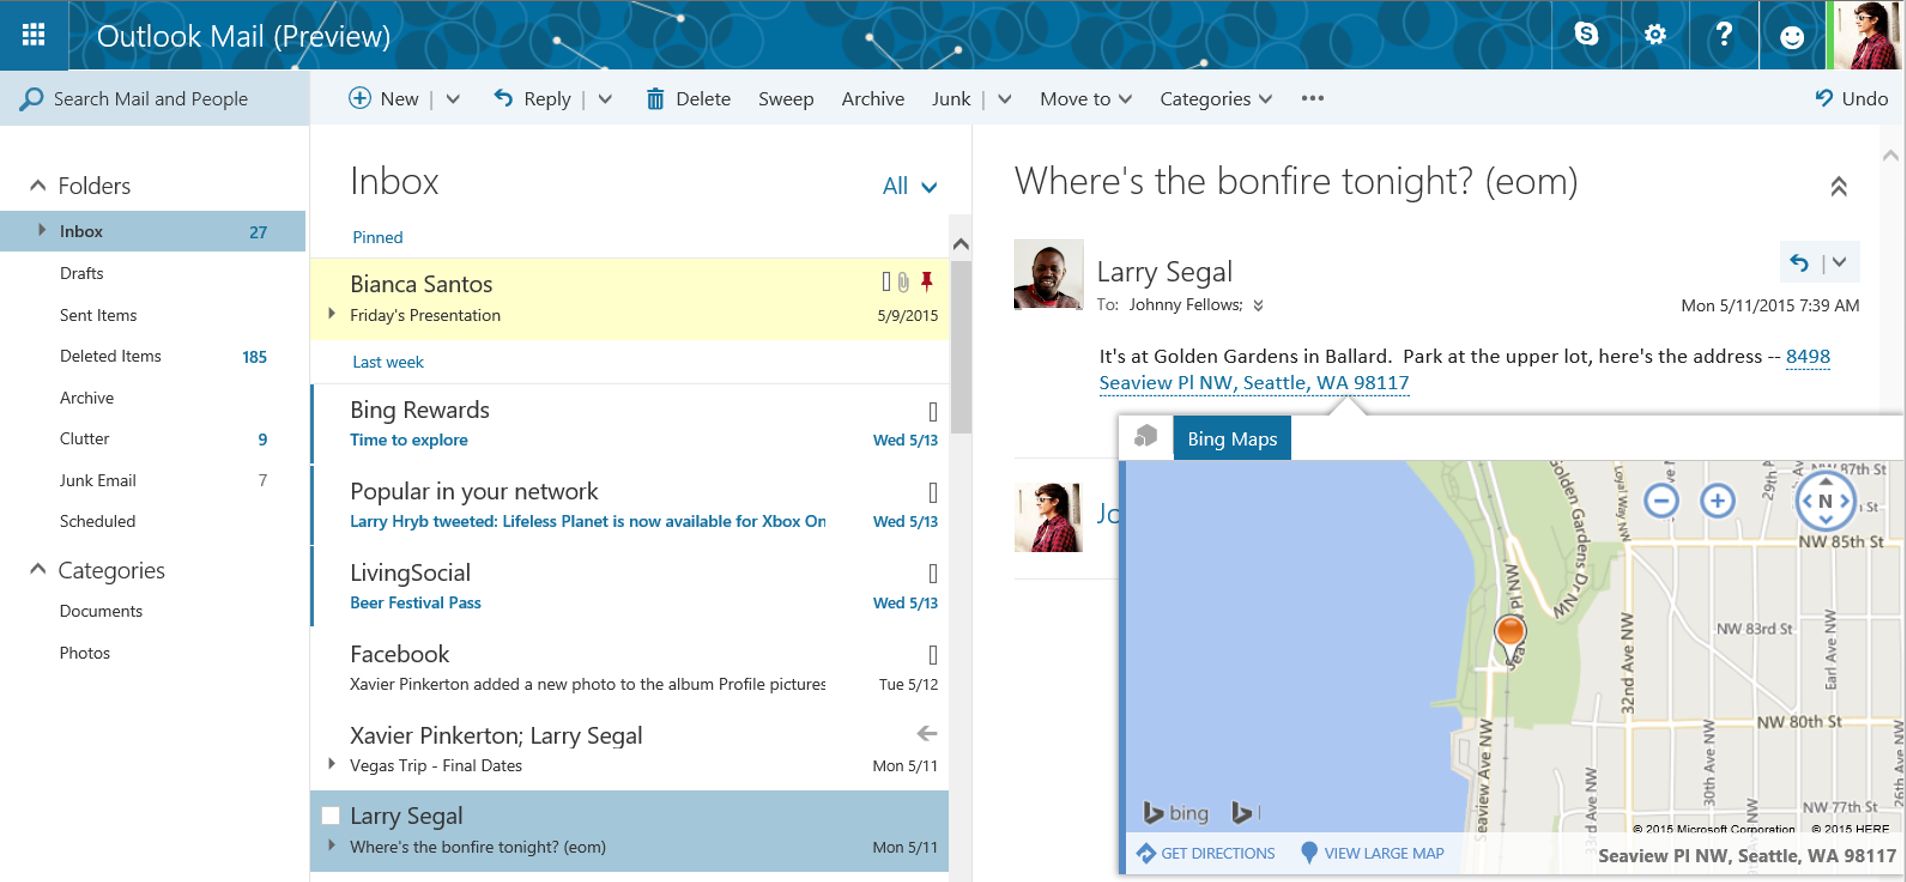 A Microsoft quase terminou de migrar os usuários do Outlook.com para uma nova experiência